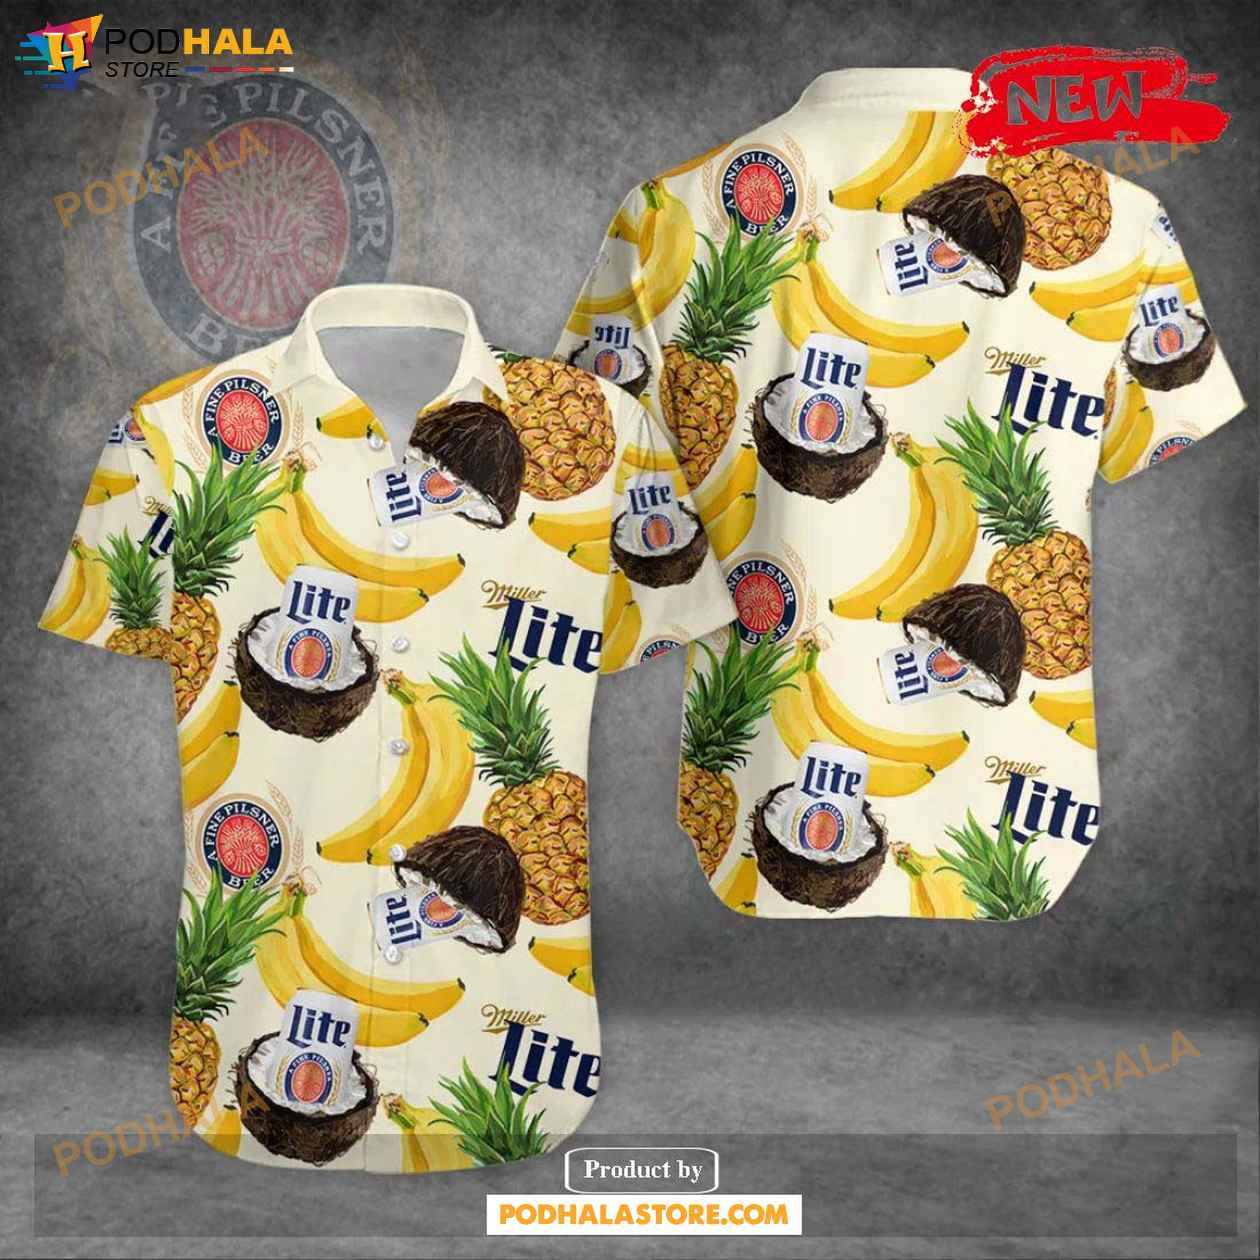 Miller Lite Pineapple Hawaiian Shirt Beach Shorts